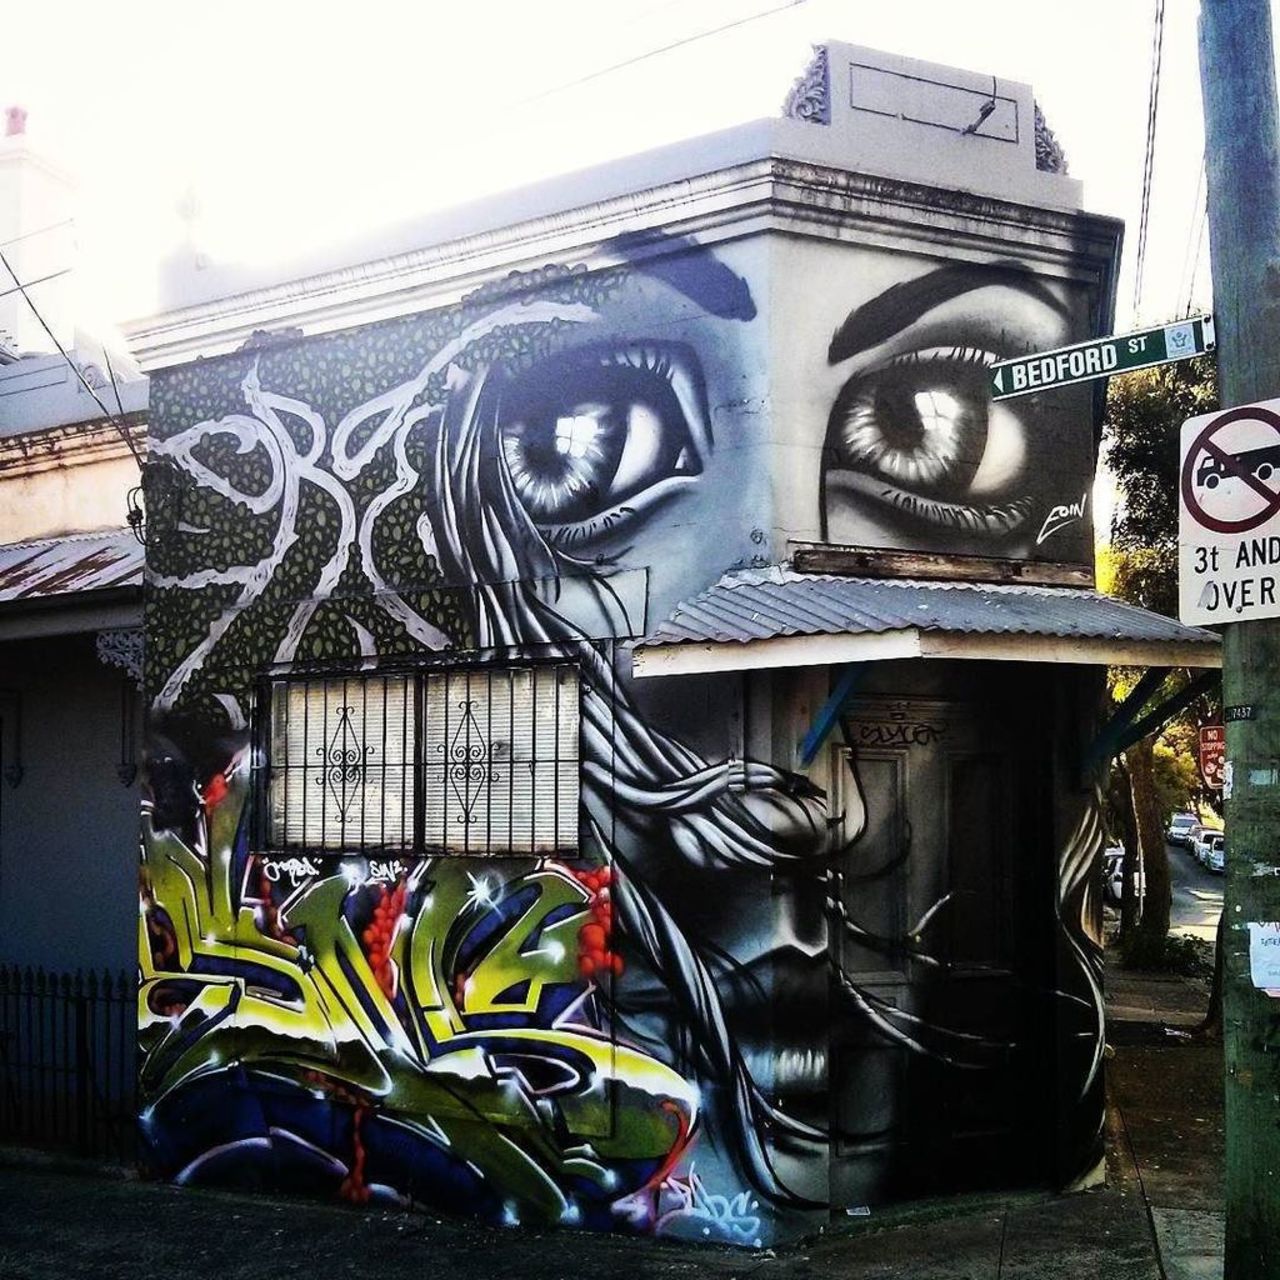 #ifttt #sydney #sydneygraffiti #newtown #rsa_graffiti #arteurbano #streetart #graffiti #graffiso https://t.co/9sLO7zRQwQ